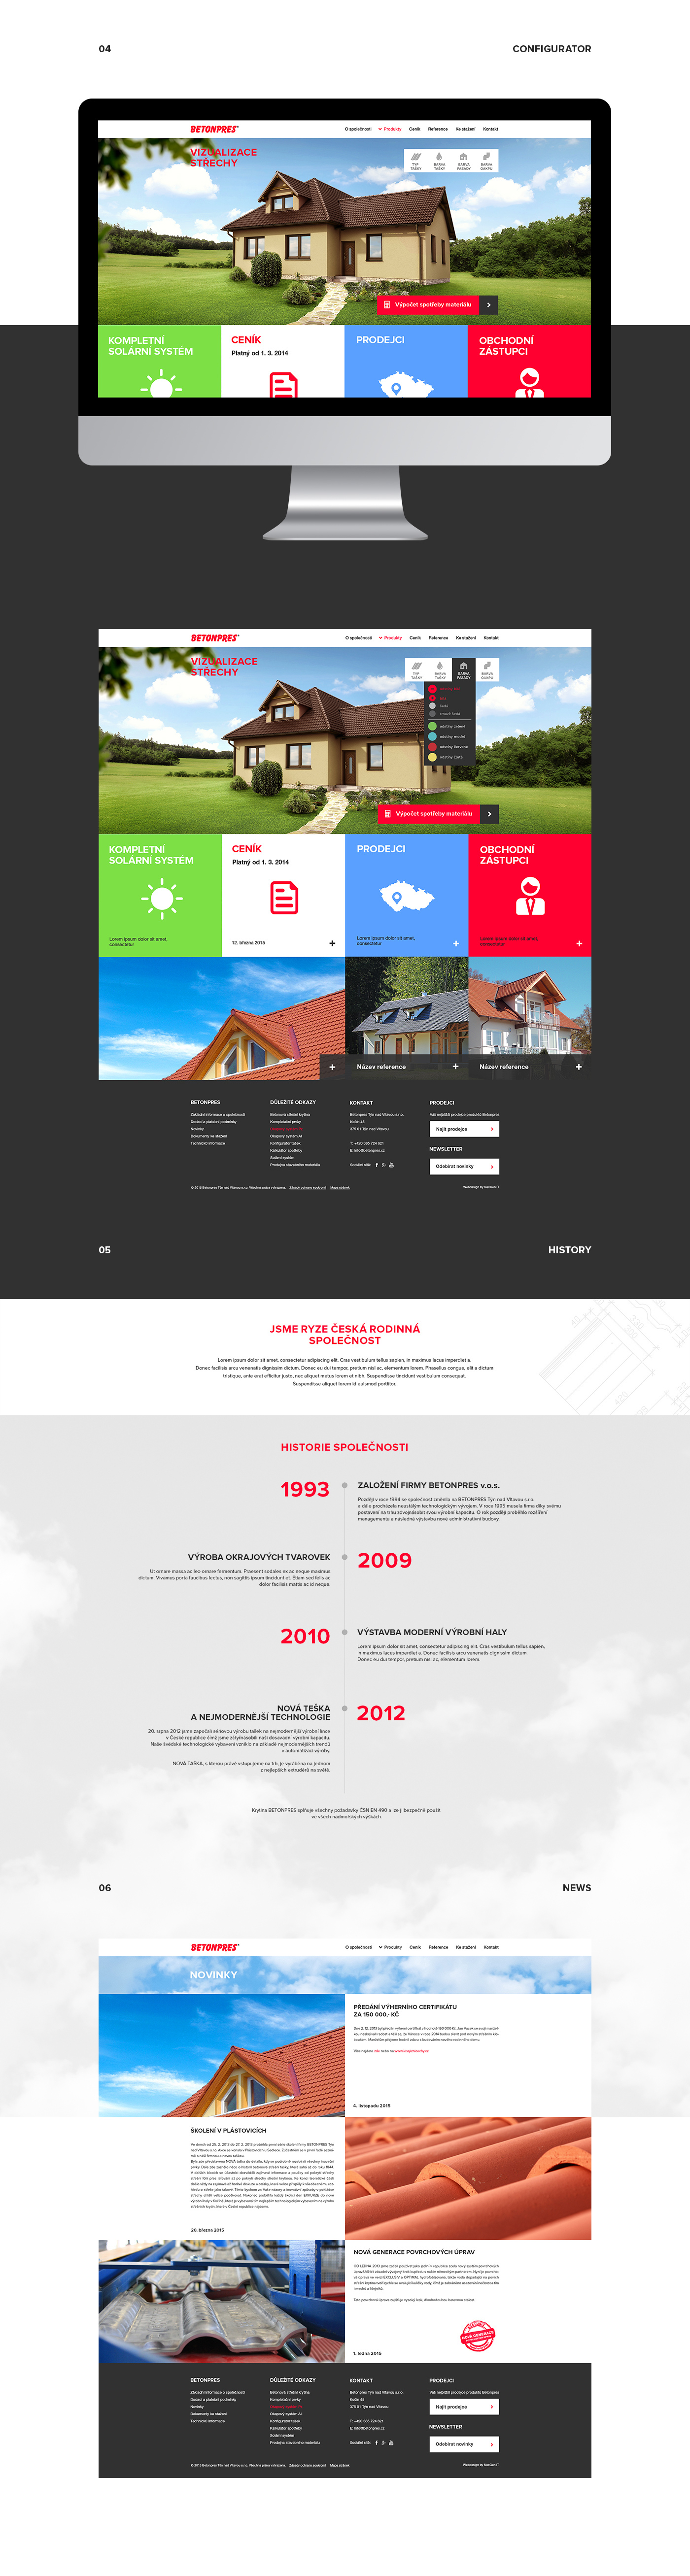 Web Design  visual design digital photography  construction Manufacturer of roofing ux/ui design wireframe Responsive Design